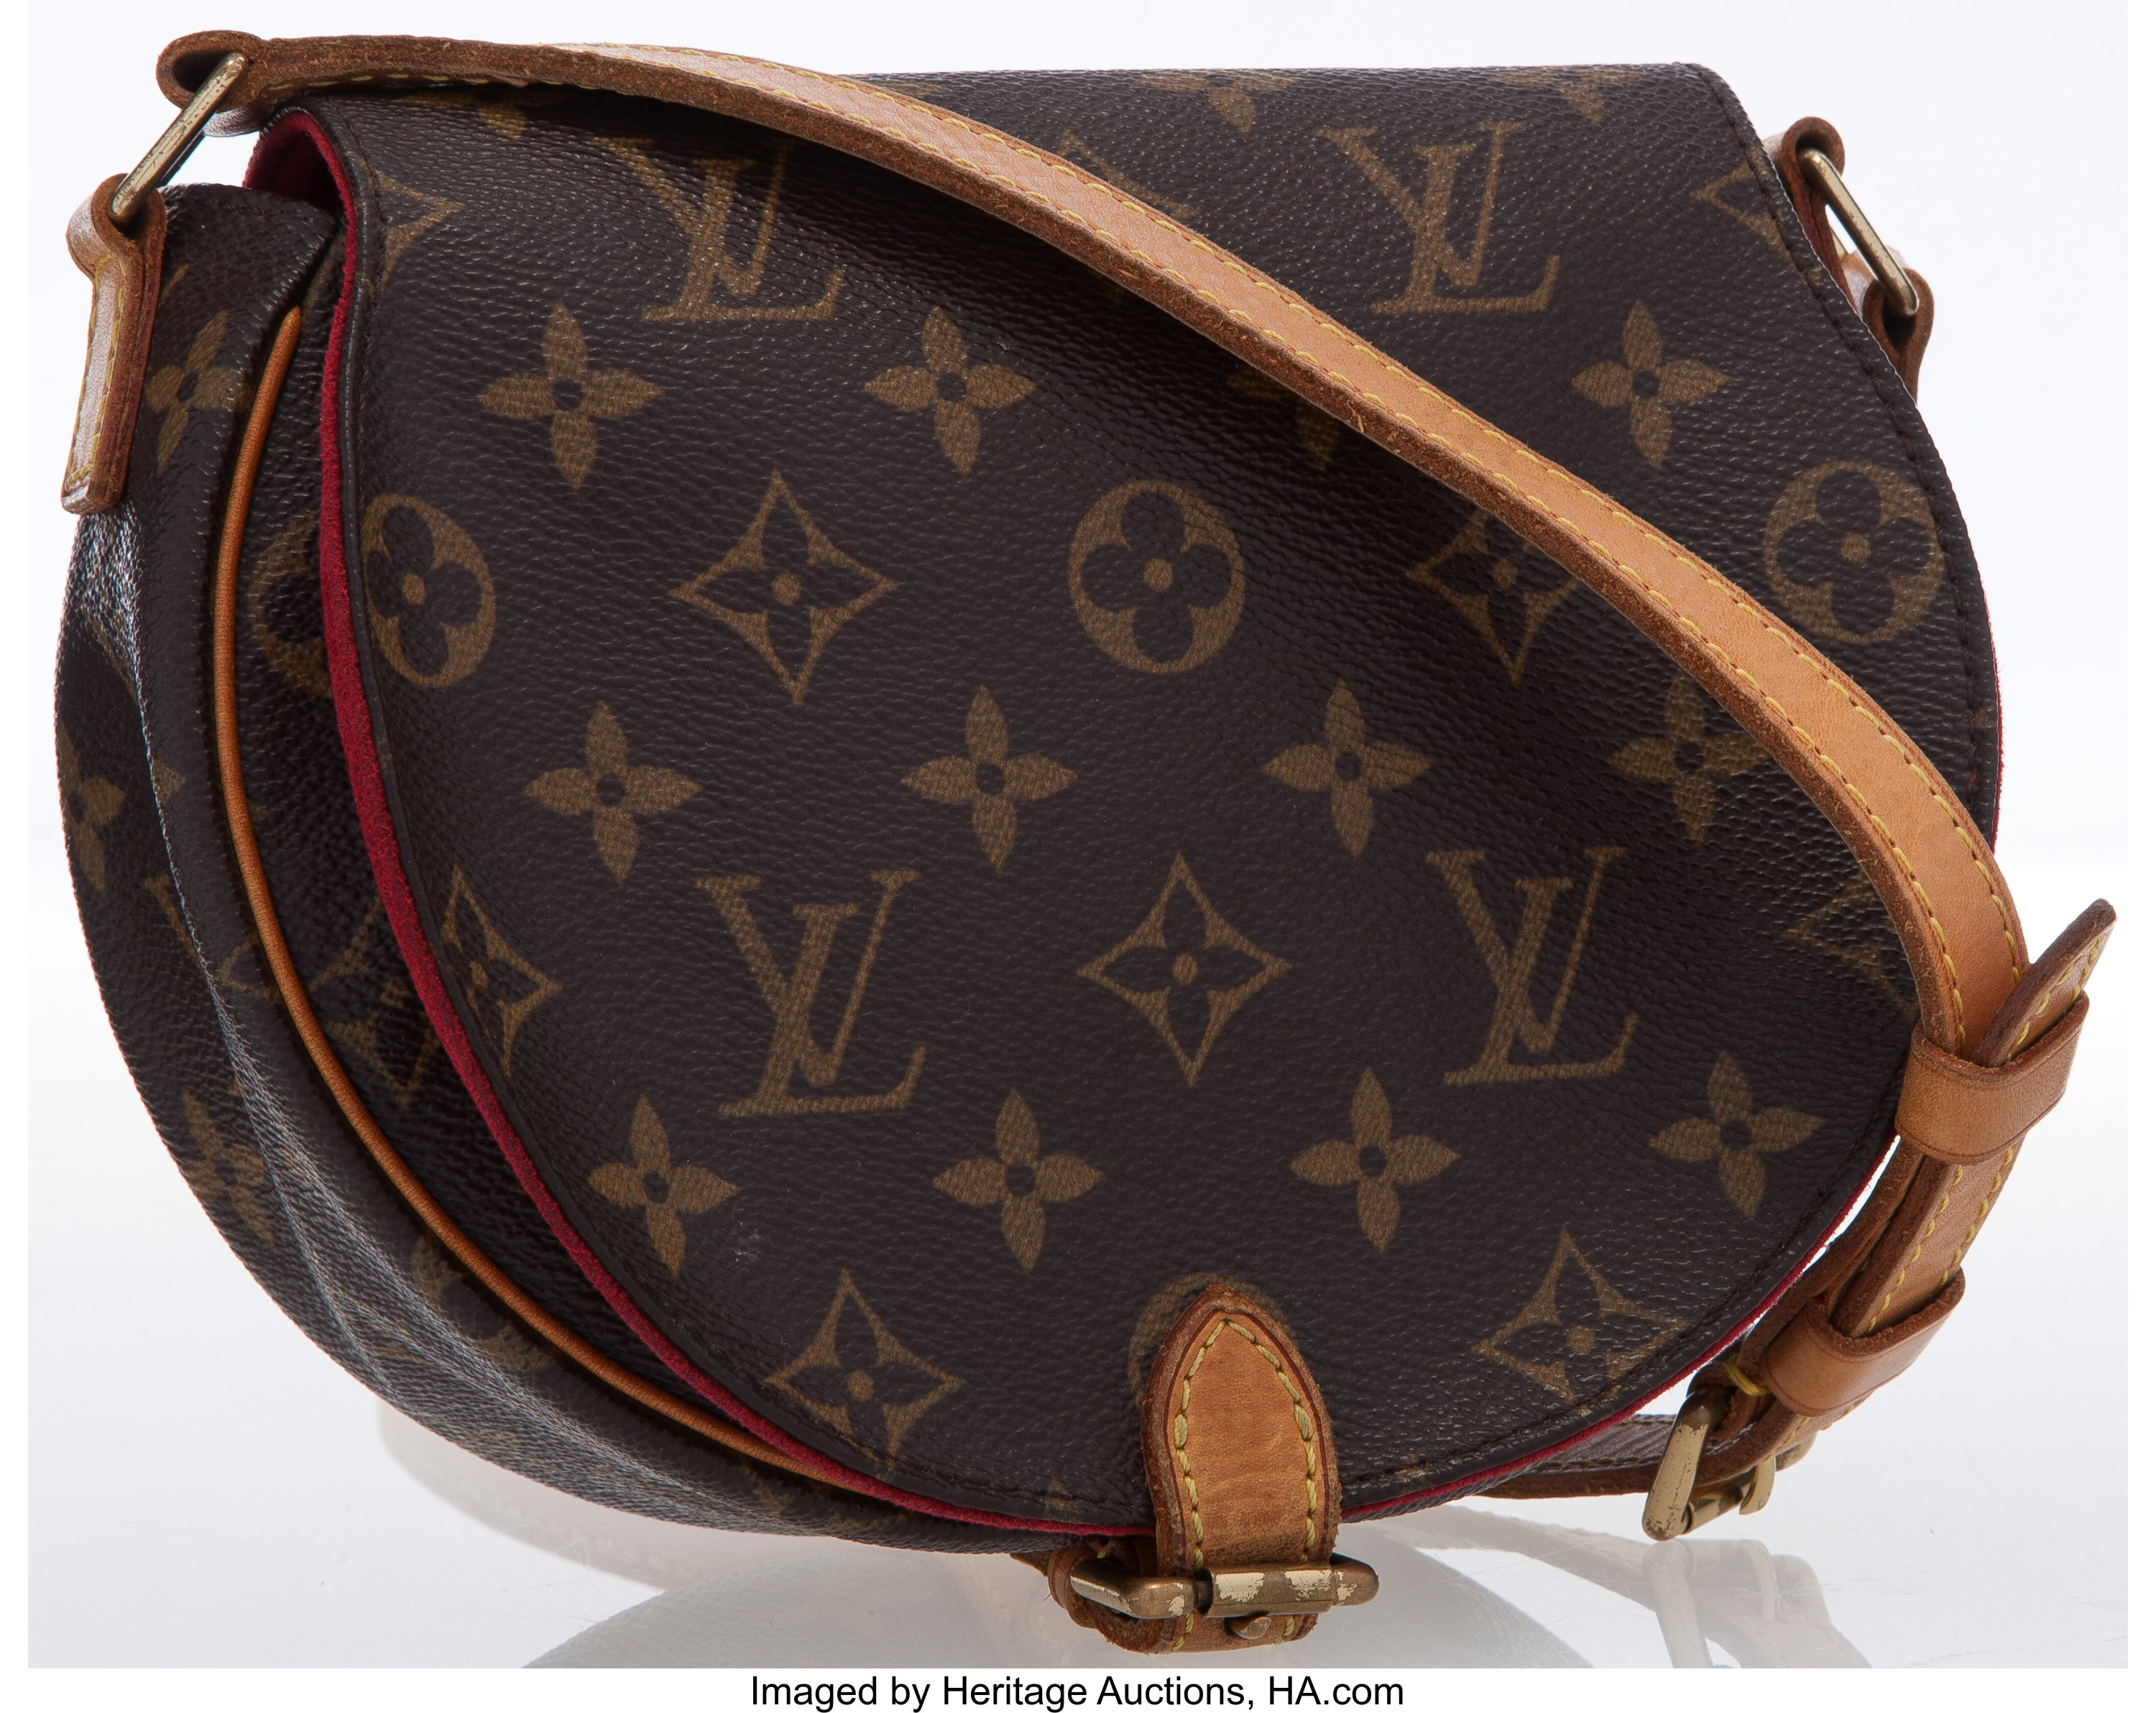 Louis Vuitton Monogram Tambourin Crossbody Bag - Brown Crossbody Bags,  Handbags - LOU434858